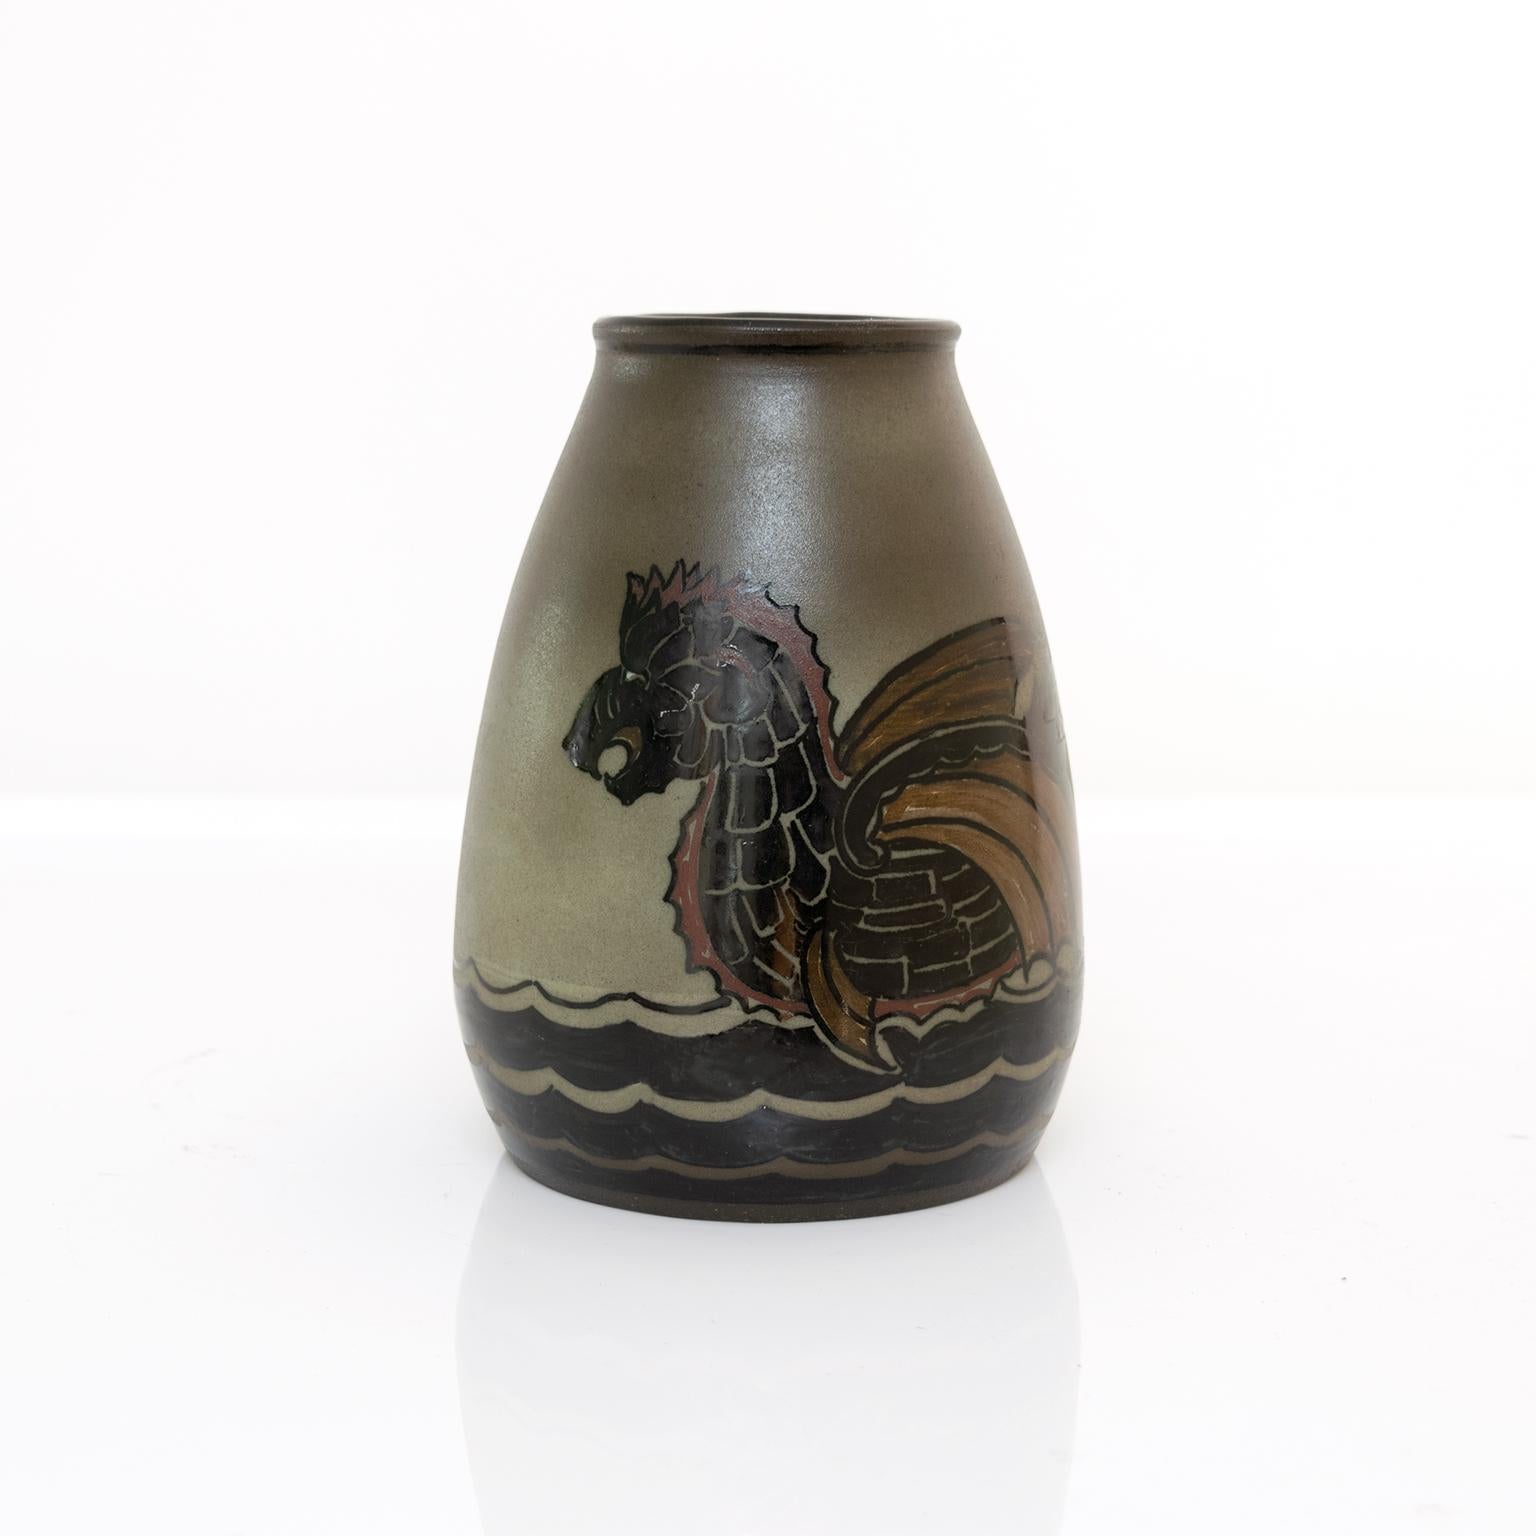 Vase unique en céramique scandinave moderne, tourné et peint à la main par Josef Ekberg pour Gustavsberg, Suède. Le vase représente un bateau sculpté comme un corps de serpent en mer. Circa 1930.

Mesures : Hauteur : 7,75